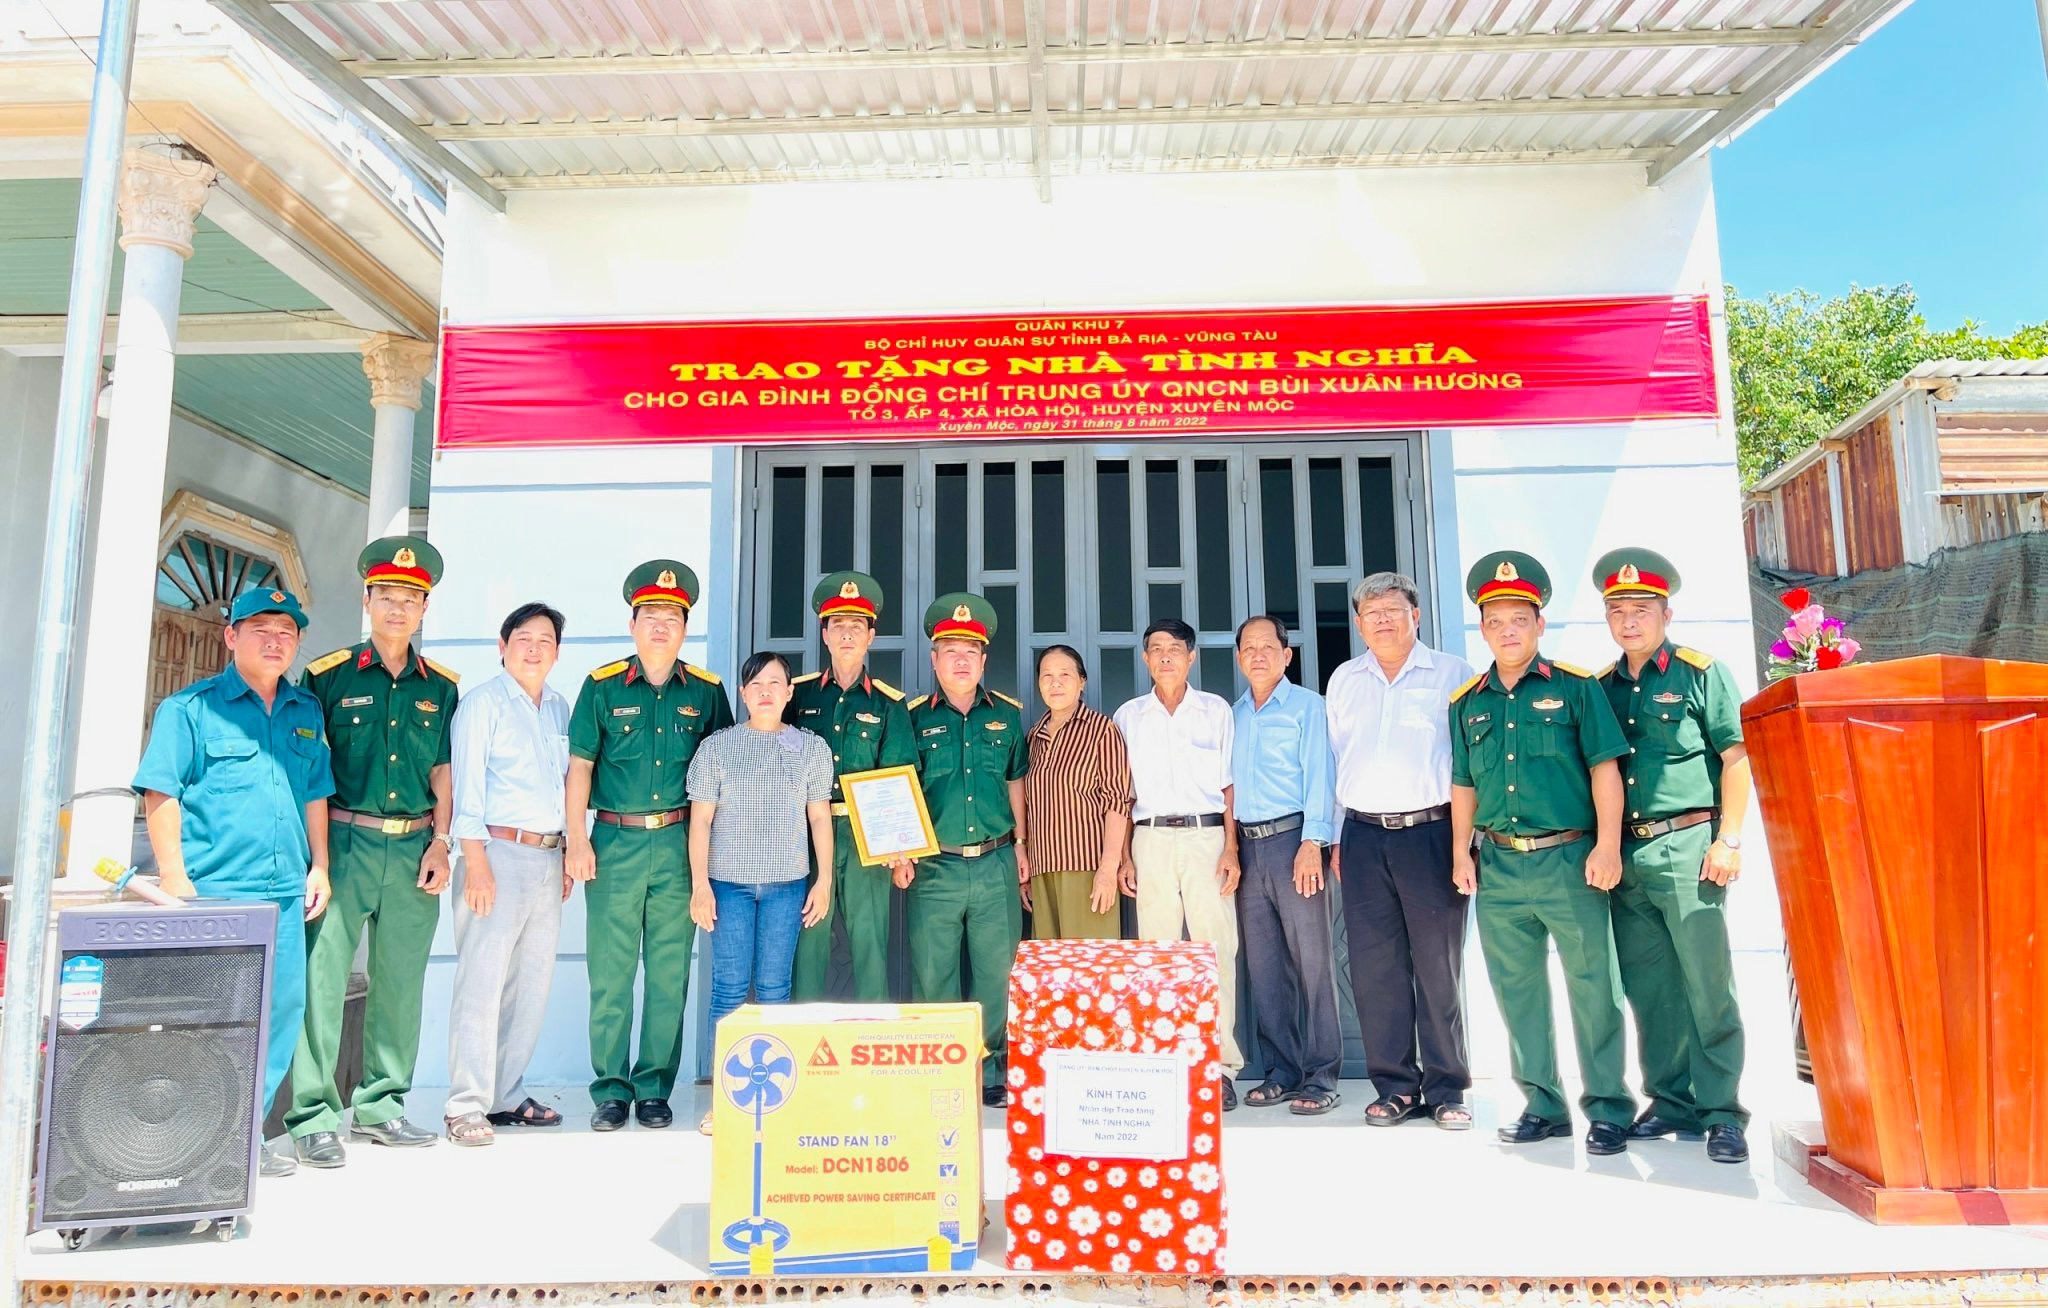  Đại diện Bộ CHQS tỉnh, Ban CHQS huyện Xuyên Mộc và chính quyền địa phương bàn giao nhà tình nghĩa cho gia đình Trung úy Bùi Xuân Hương.